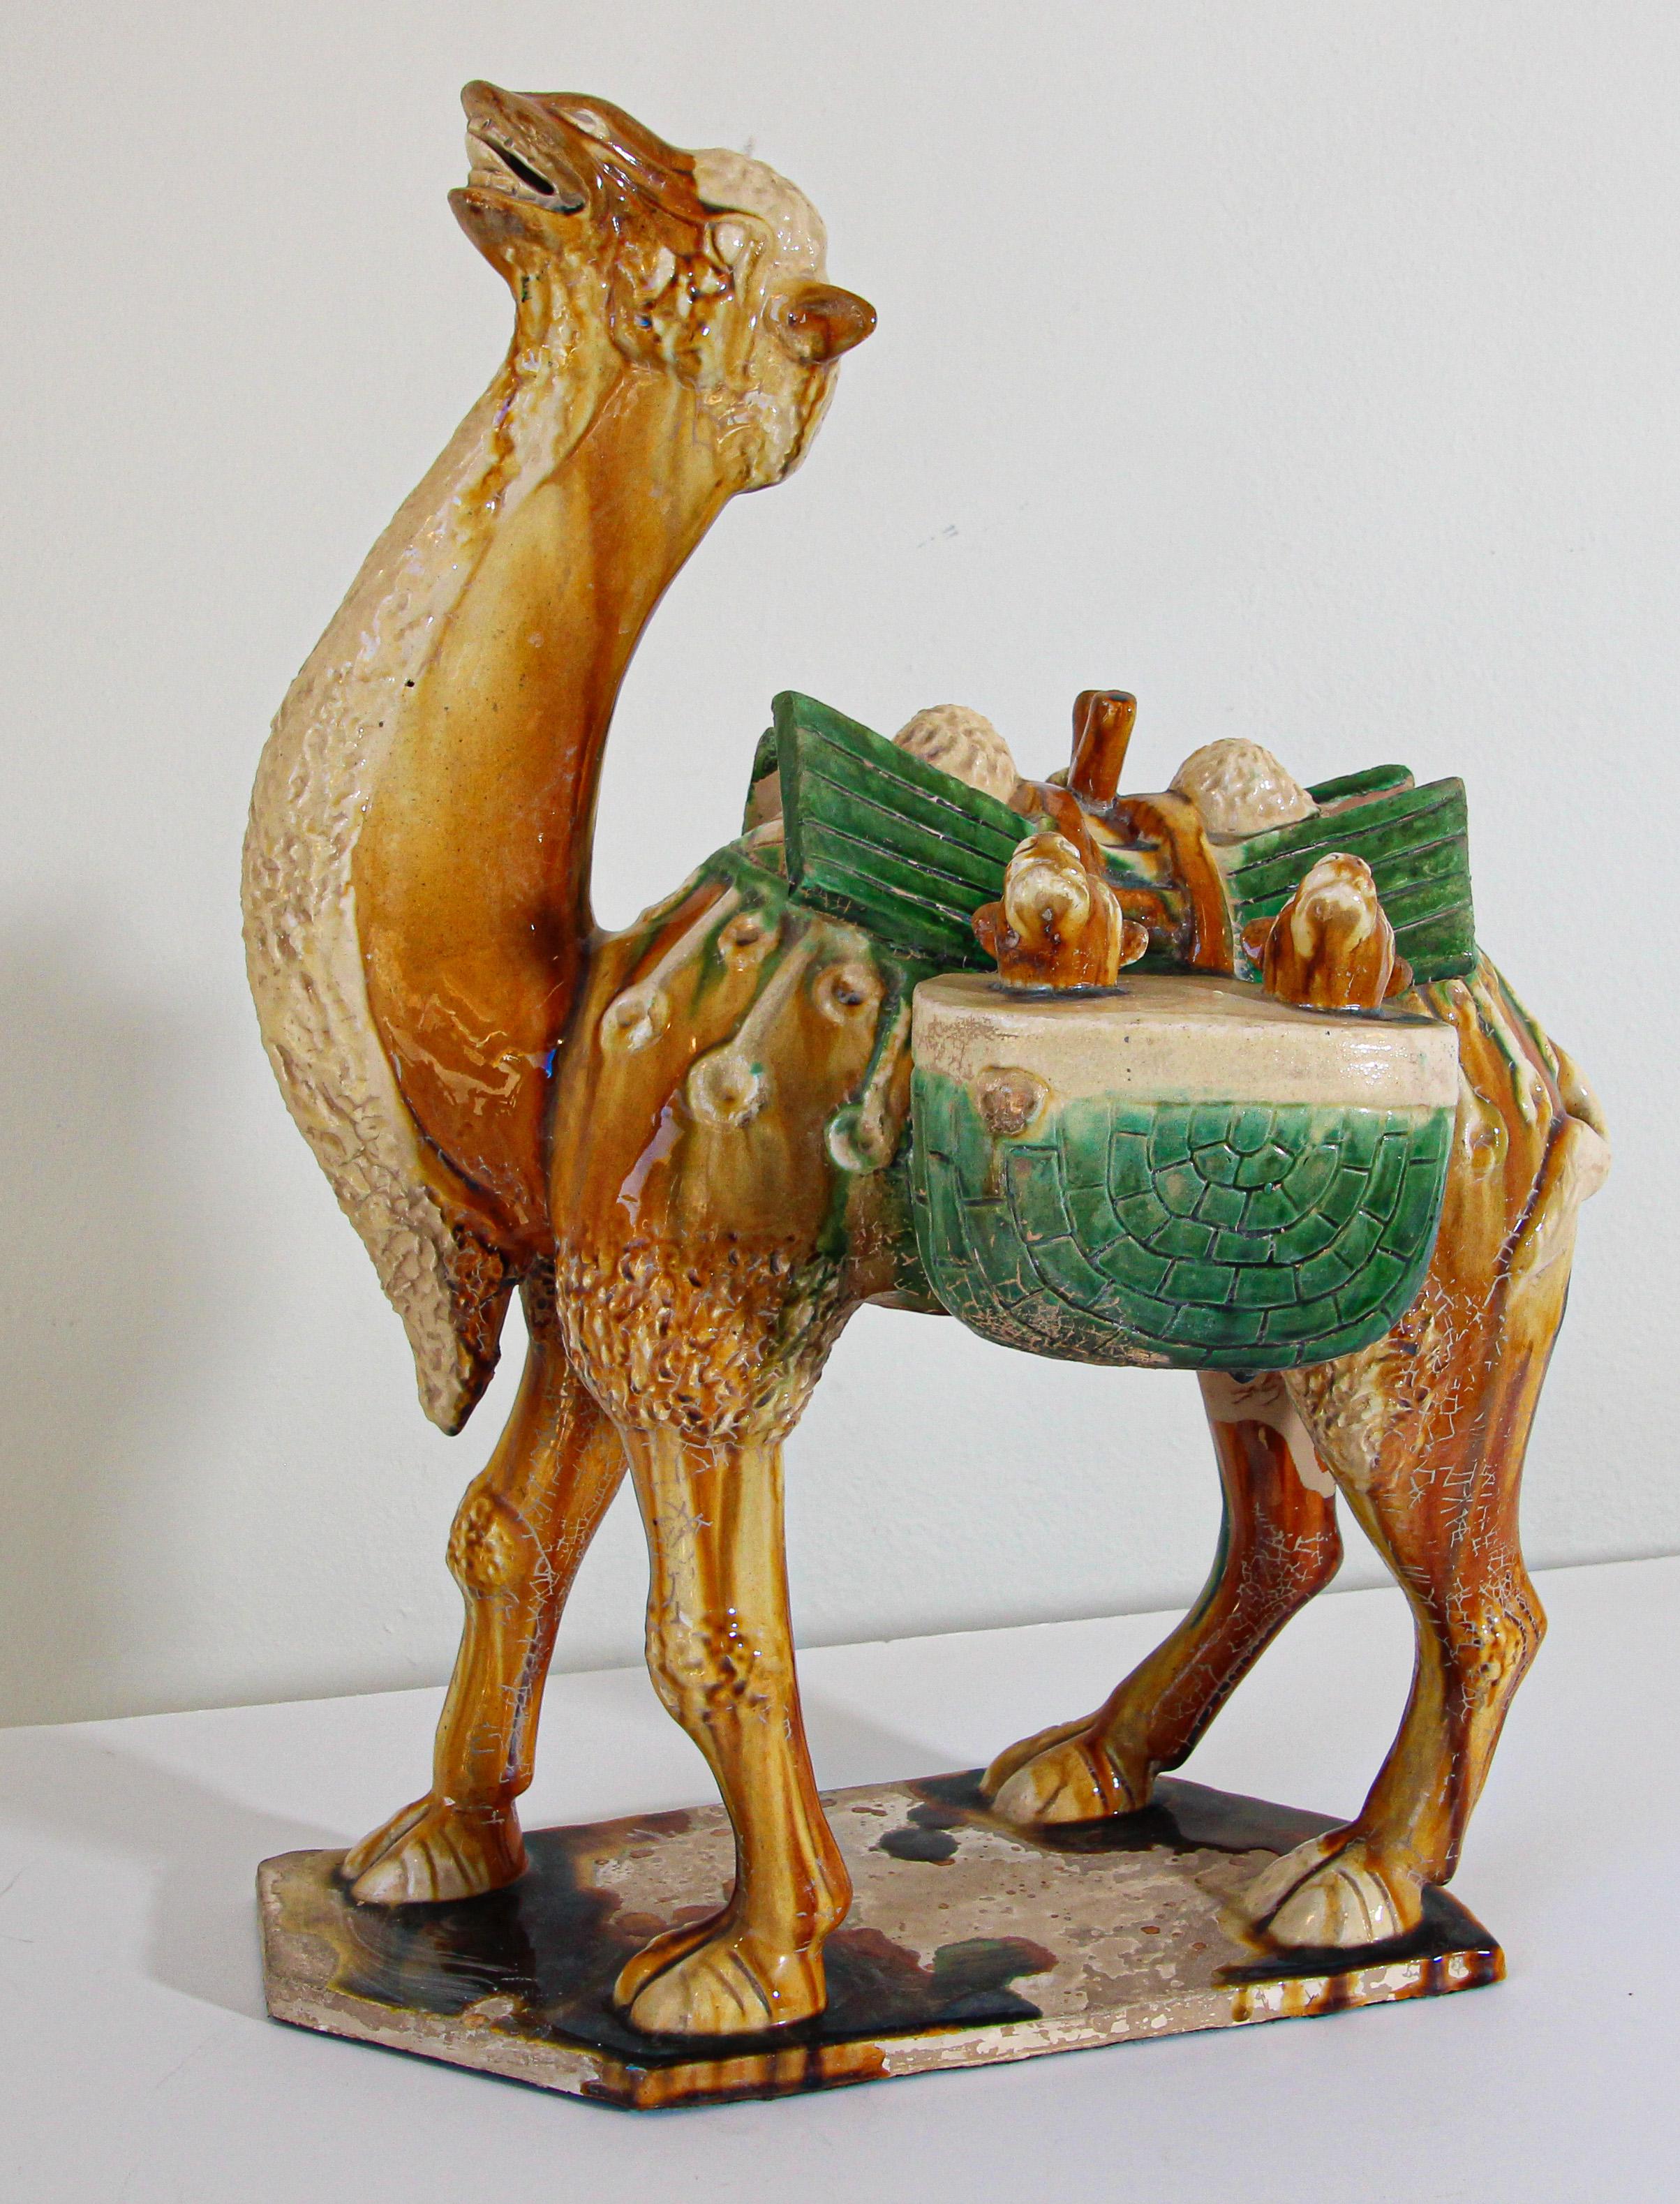 Vintage Sancai glazed blue pottery figure of a camel Chinese Tang Dynasty manner.
Magnifique grande figurine en poterie émaillée de style Tang représentant un chameau transportant des marchandises.
Réalisé en céramique émaillée traditionnelle de